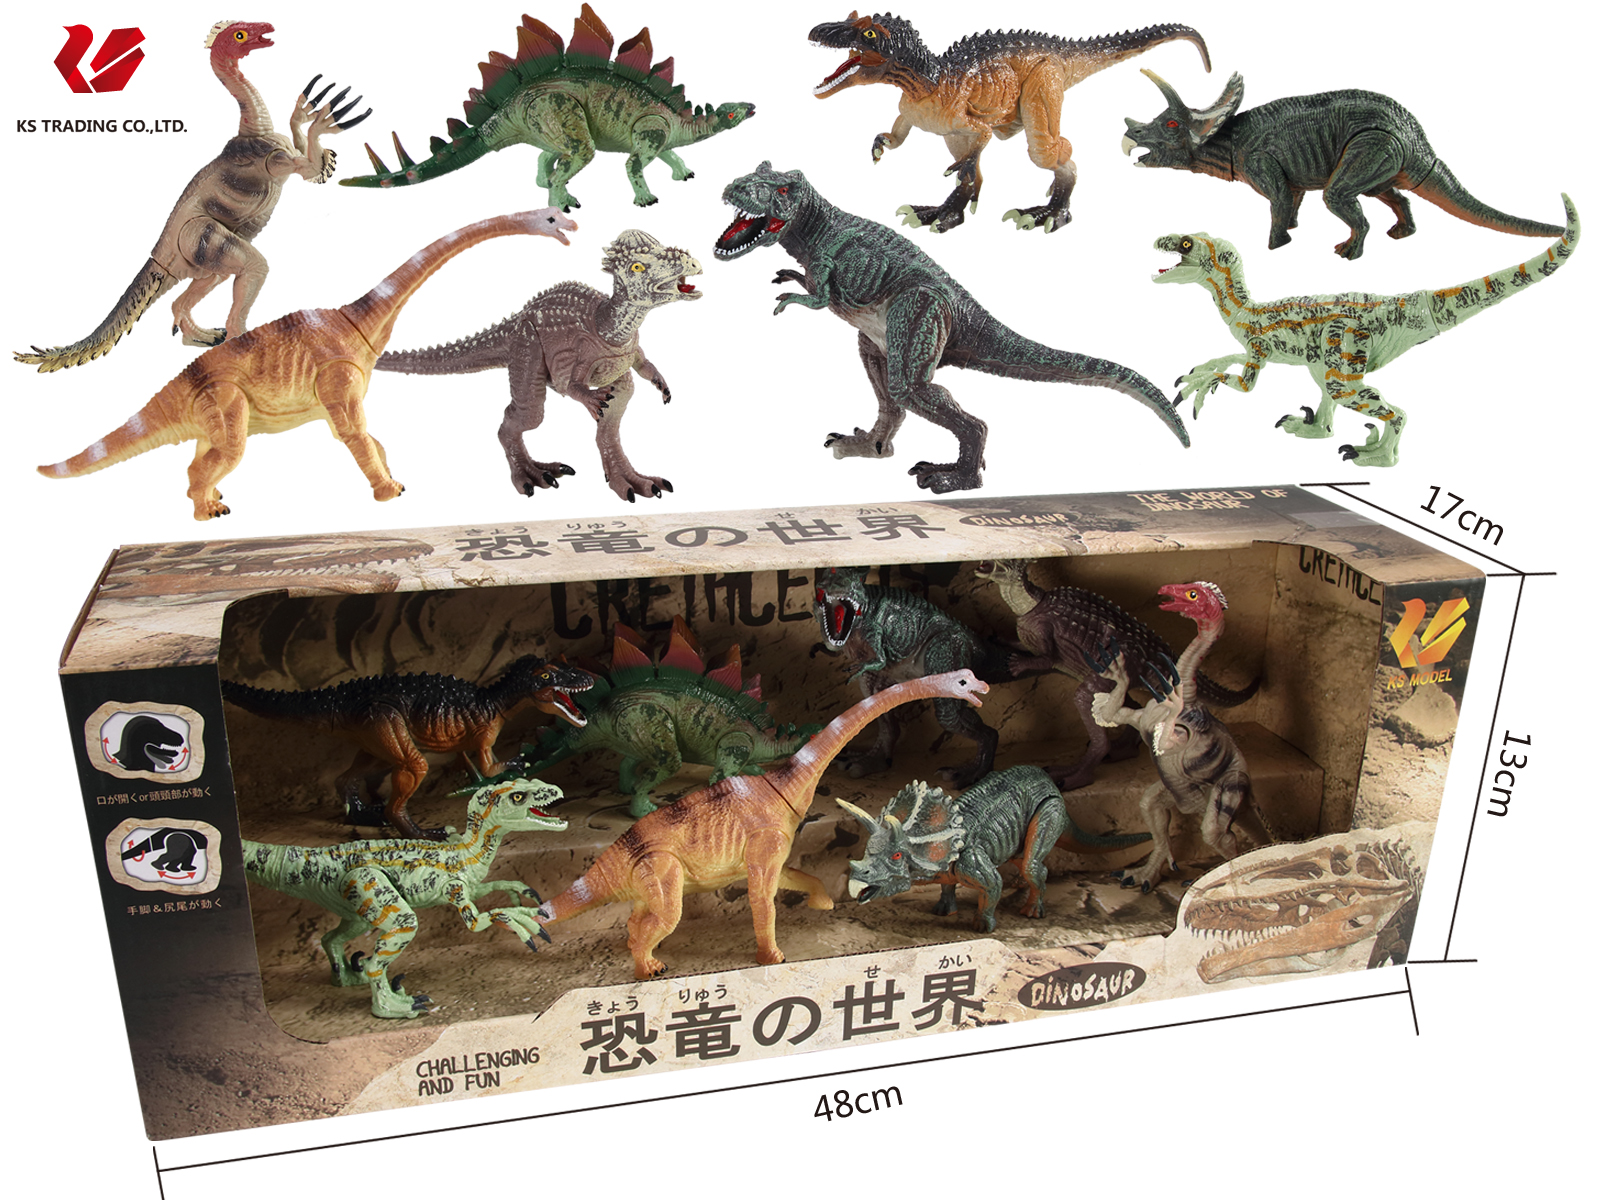 プレゼントに大人気 リアルで満足間違いなし 恐竜おもちゃ 恐竜フィギア 国内正規総代理店アイテム ダイナソーモデル 8体セットX'masプレゼントや誕生日プレゼントに大人気 送料無料 子供 キッズ ギフト 恐竜 フィギュア DINOSAUR 本格的なリアルフィギュア 人形 可動できる恐竜フィギュア NEW 模型 フィギア 恐竜の世界セットA 可動できる恐竜おもちゃ 玩具 MODEL おもちゃ